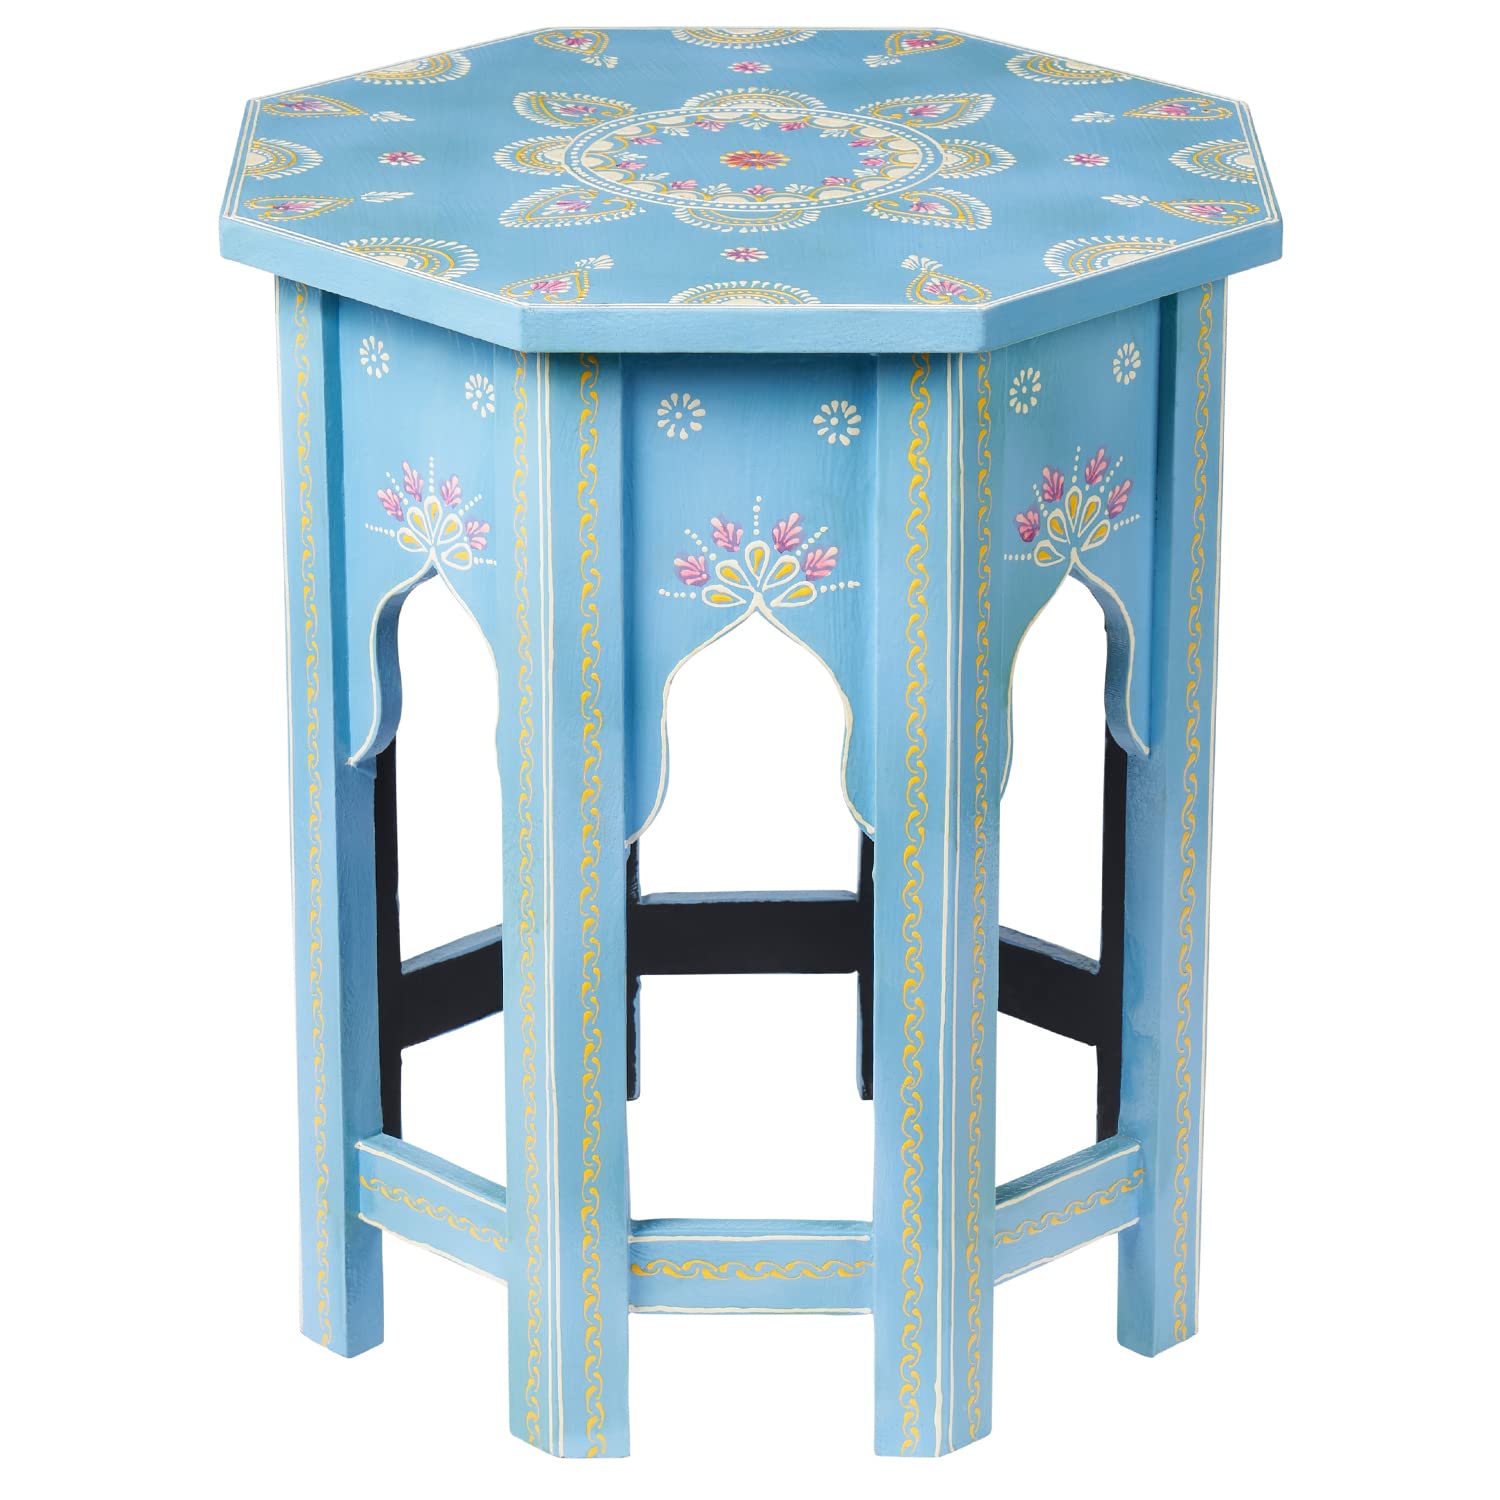 MARRAKESCH Beistelltisch Nachttisch aus Holz 47cm groß Tisch Hocker Boufa blau als Orientalische Dekoration